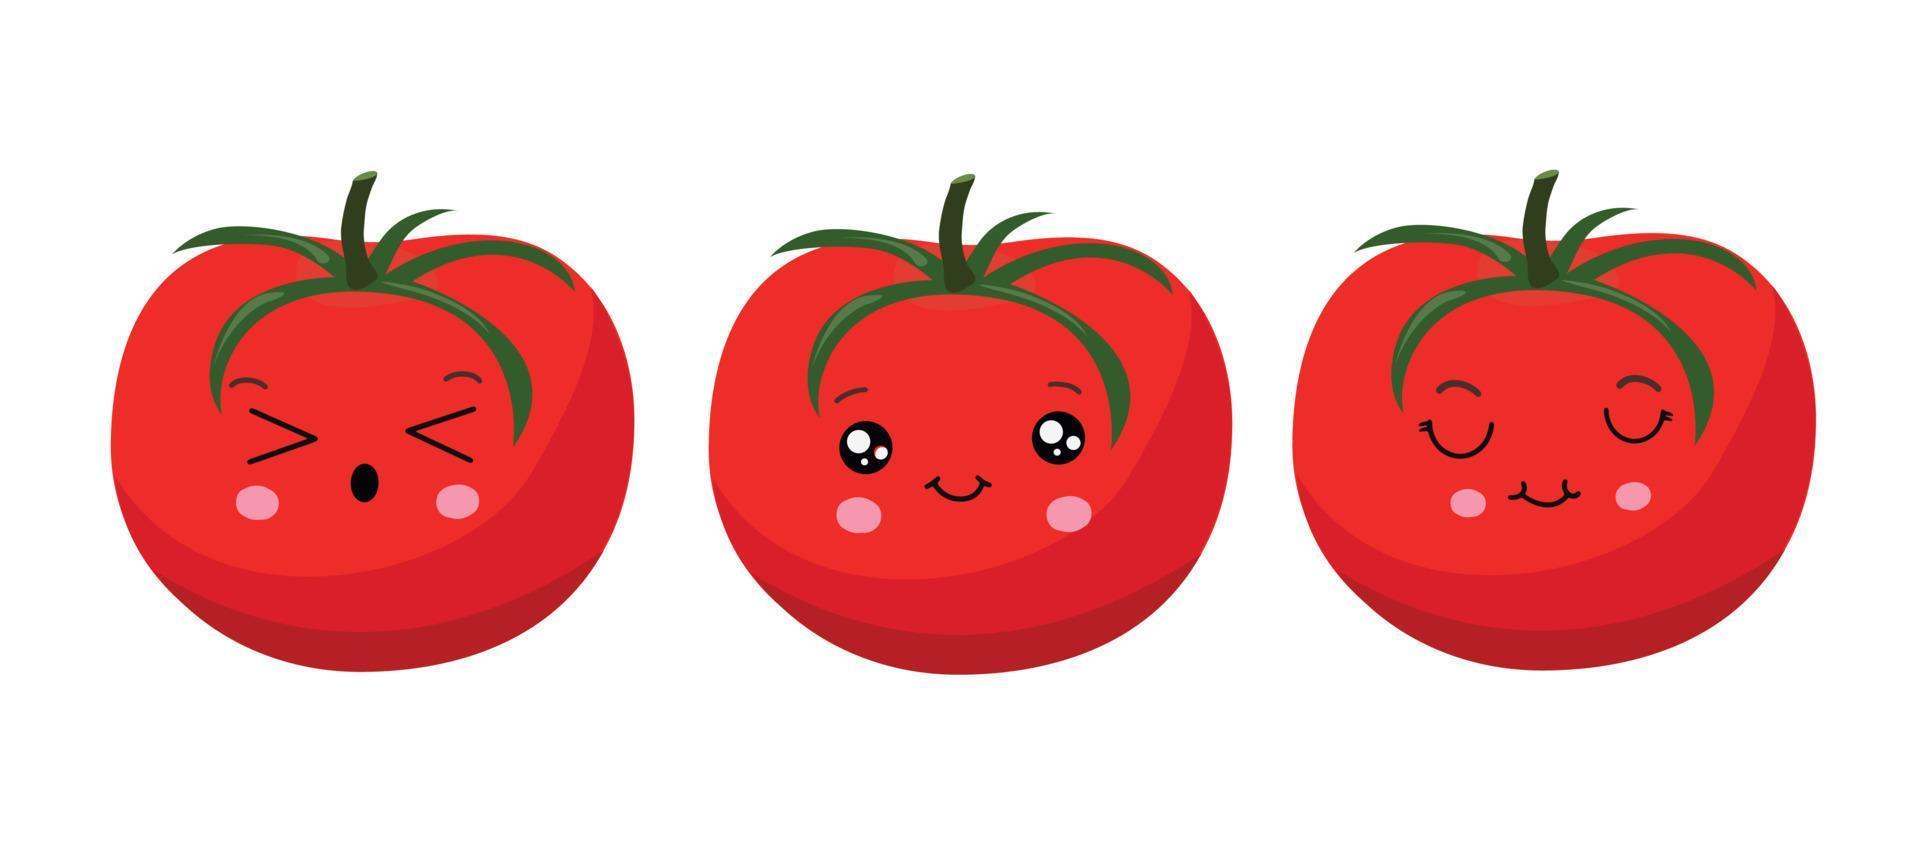 tomate vermelho no estilo kawaii. ilustração vetorial vetor